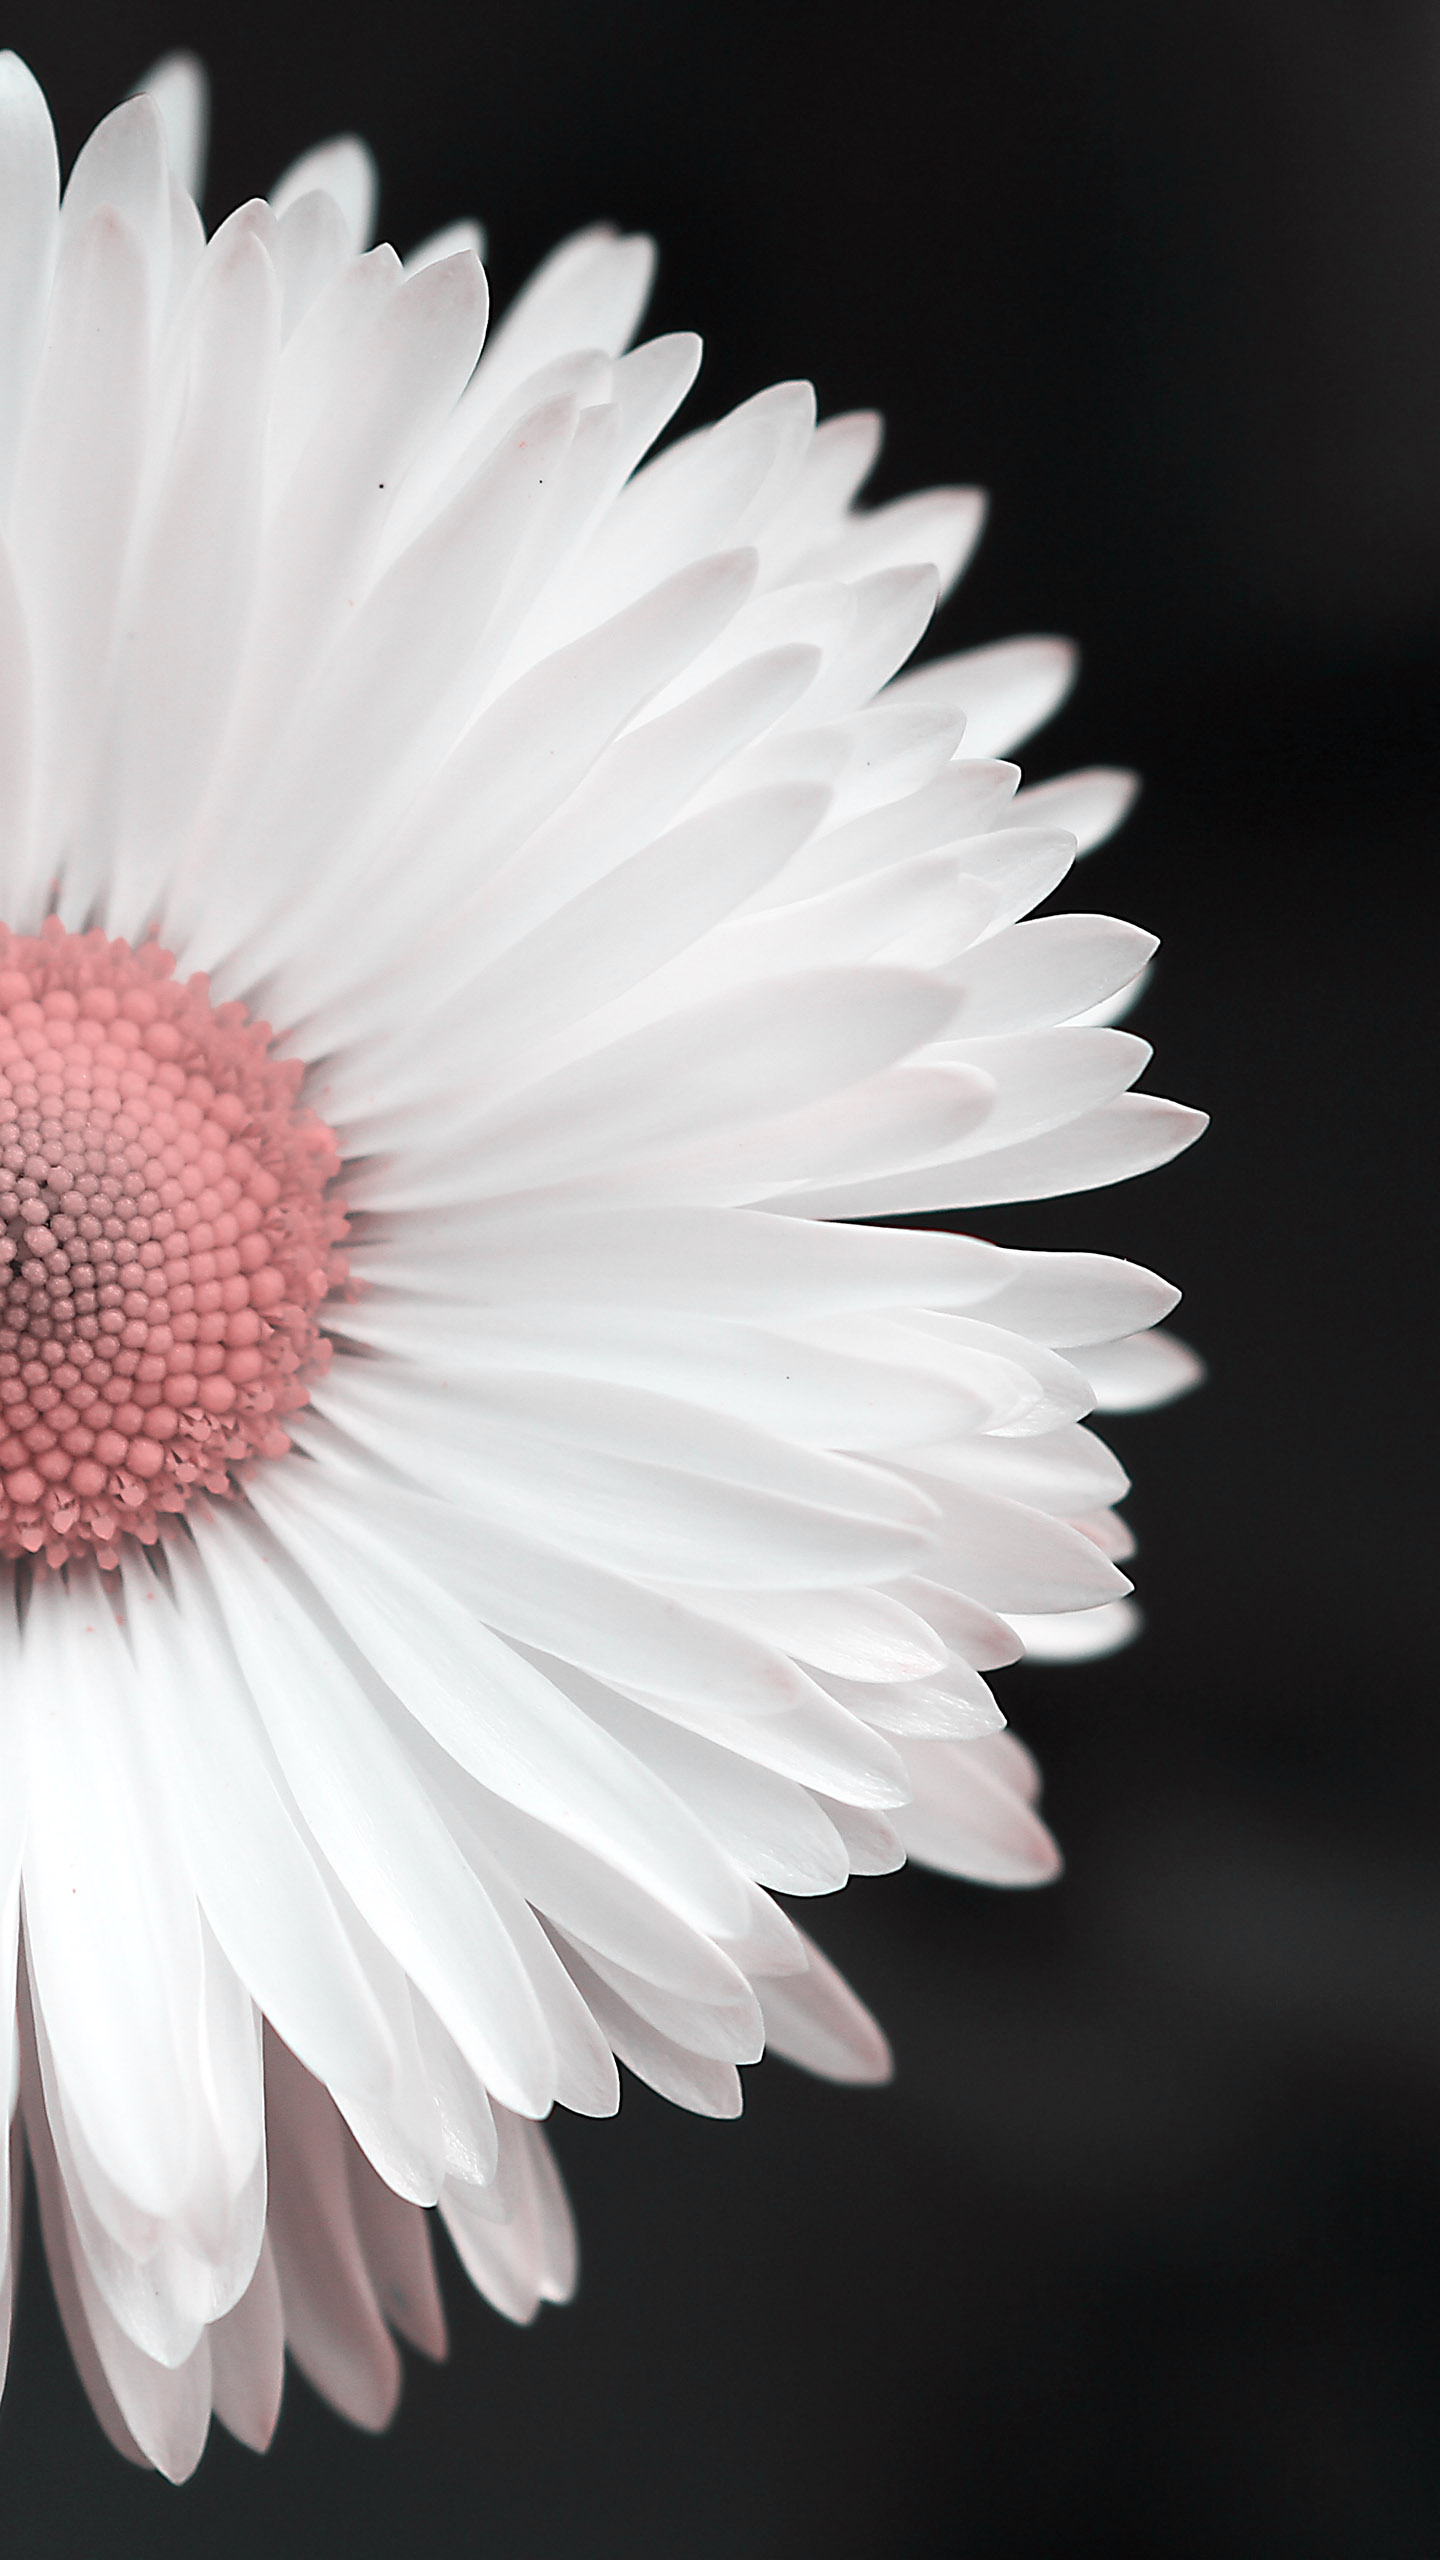 Hoa cúc trắng tuyệt đẹp, đó là điều mà mọi người đều phải khen ngợi. Hãy cùng ngắm nhìn những hình ảnh đẹp tuyệt vời của hoa cúc trắng và tìm hiểu thêm về loài hoa đặc biệt này. Những hình ảnh này chắc chắn sẽ đem đến cảm giác thư giãn và yên bình cho trái tim bạn.